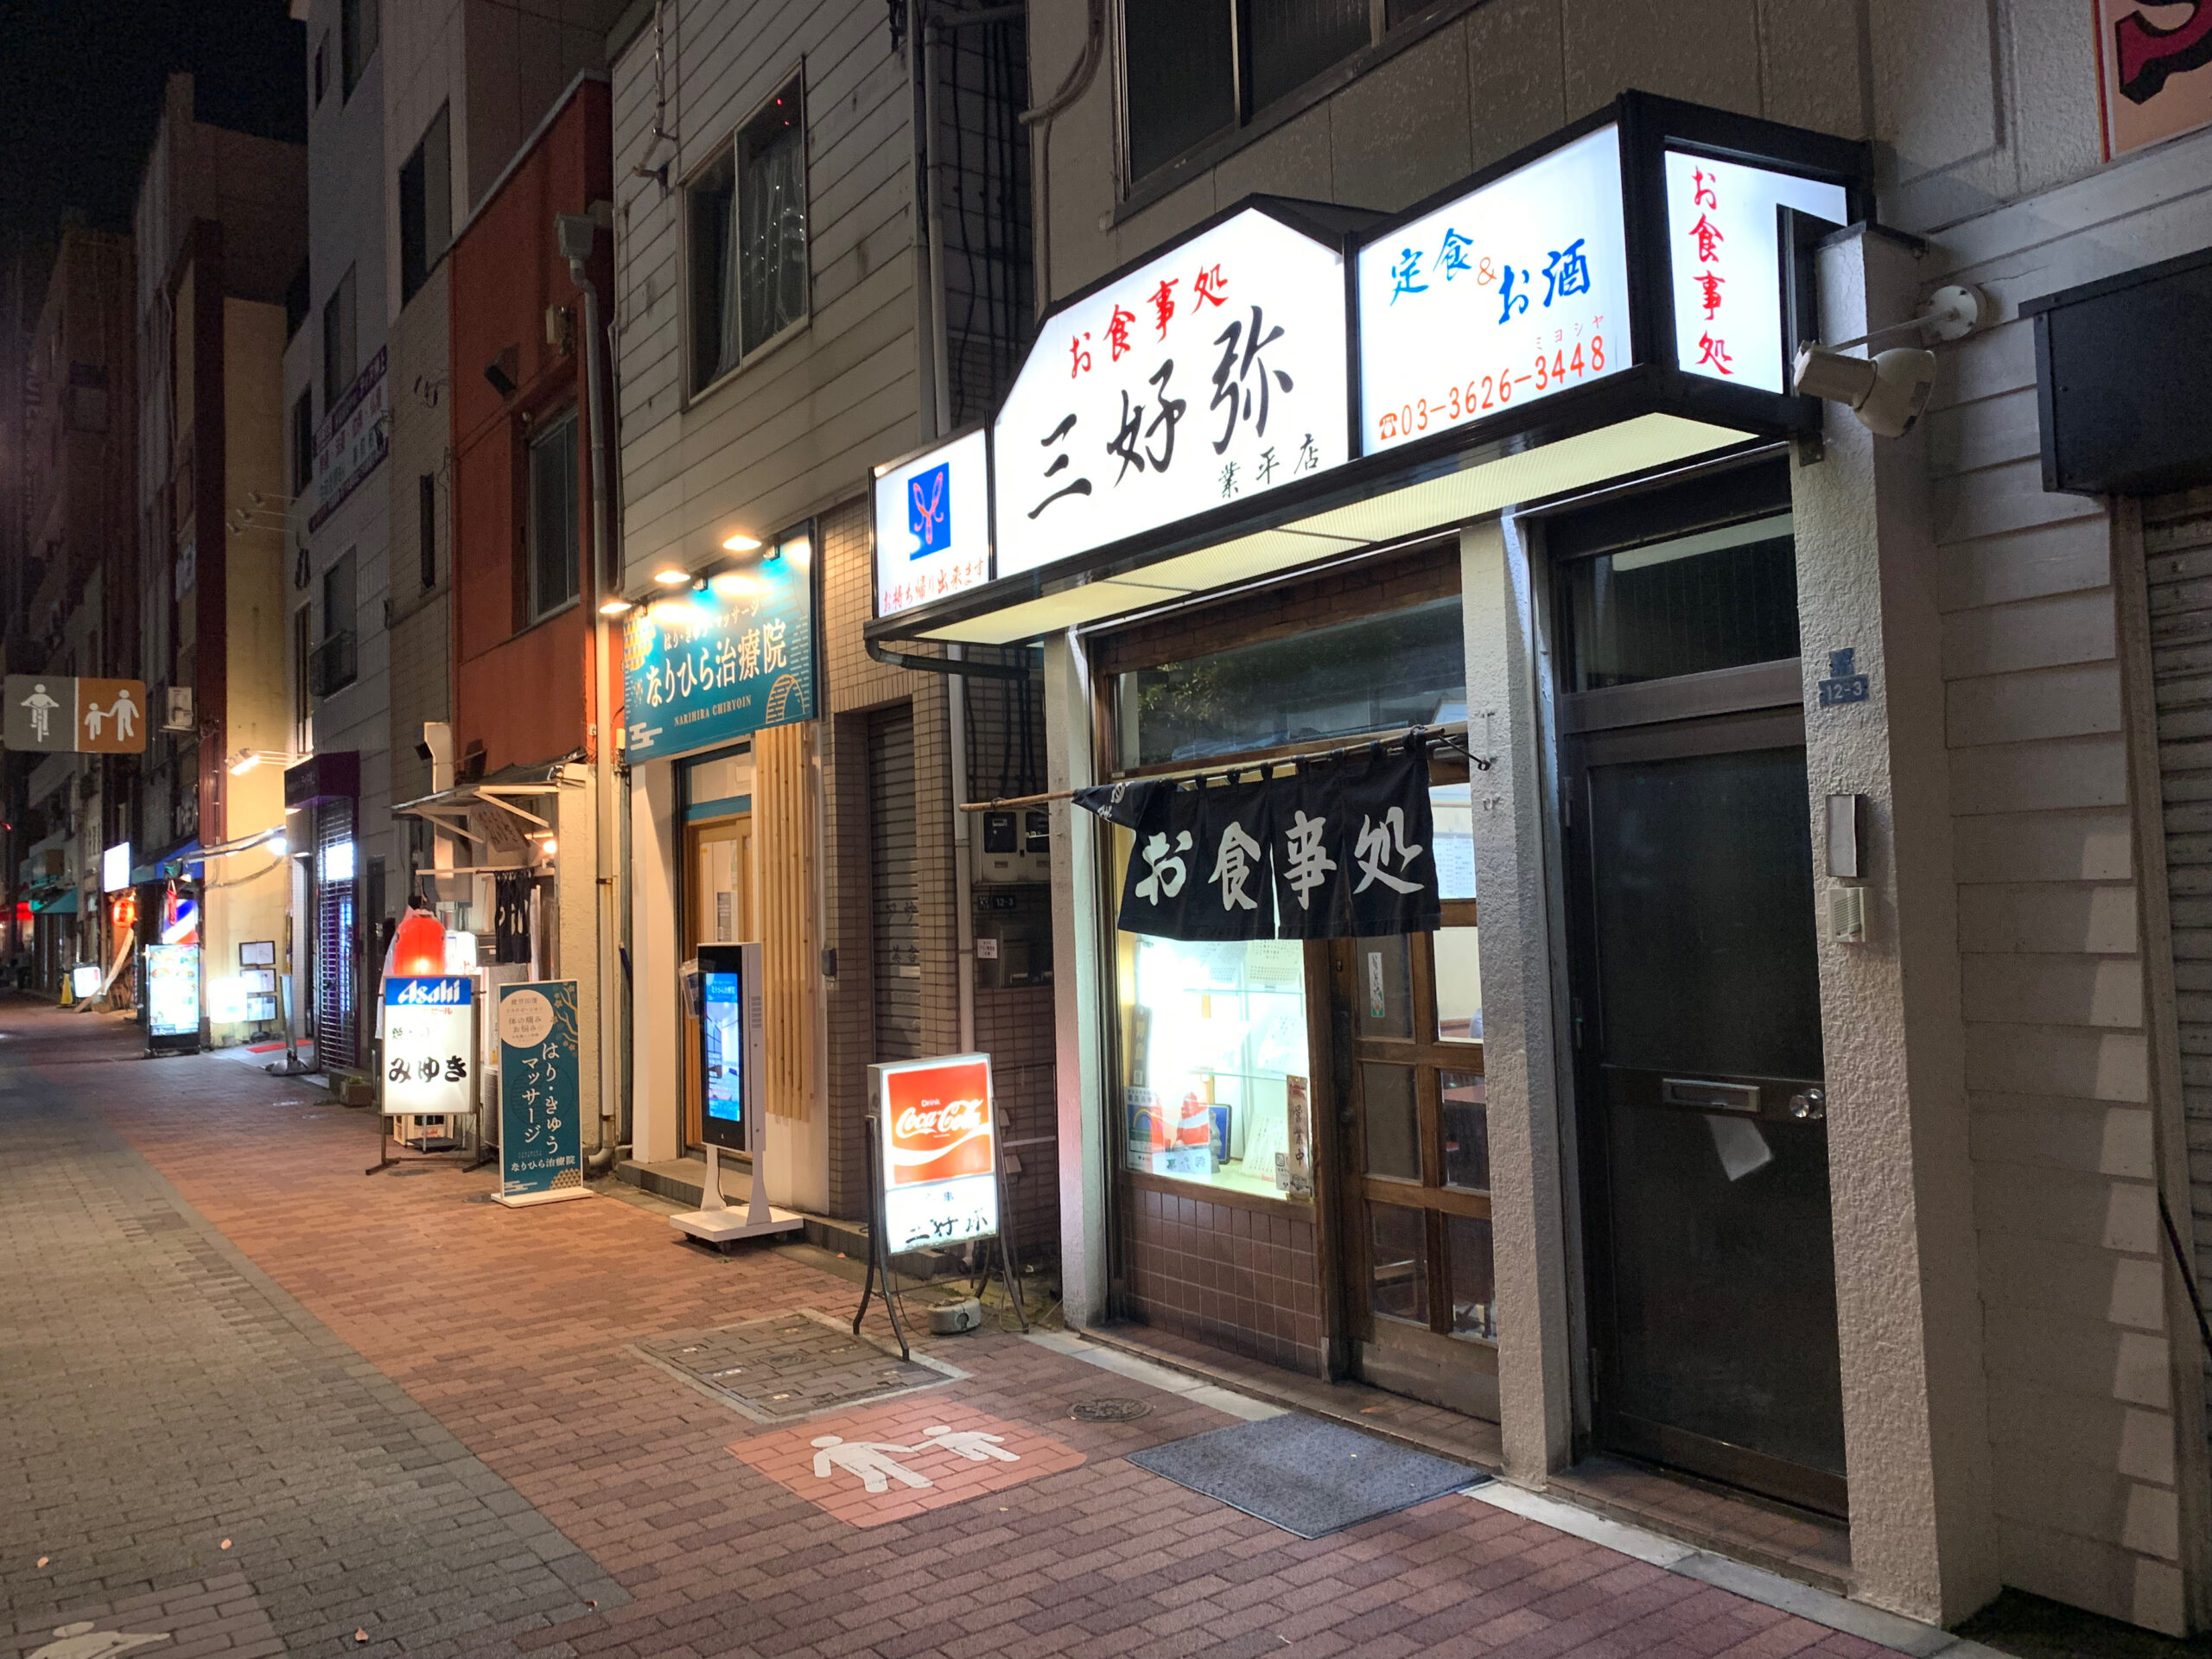 東京スカイツリーすぐそばにある、歴史ある食堂「三好弥」に約30年ぶりに行ってきました。